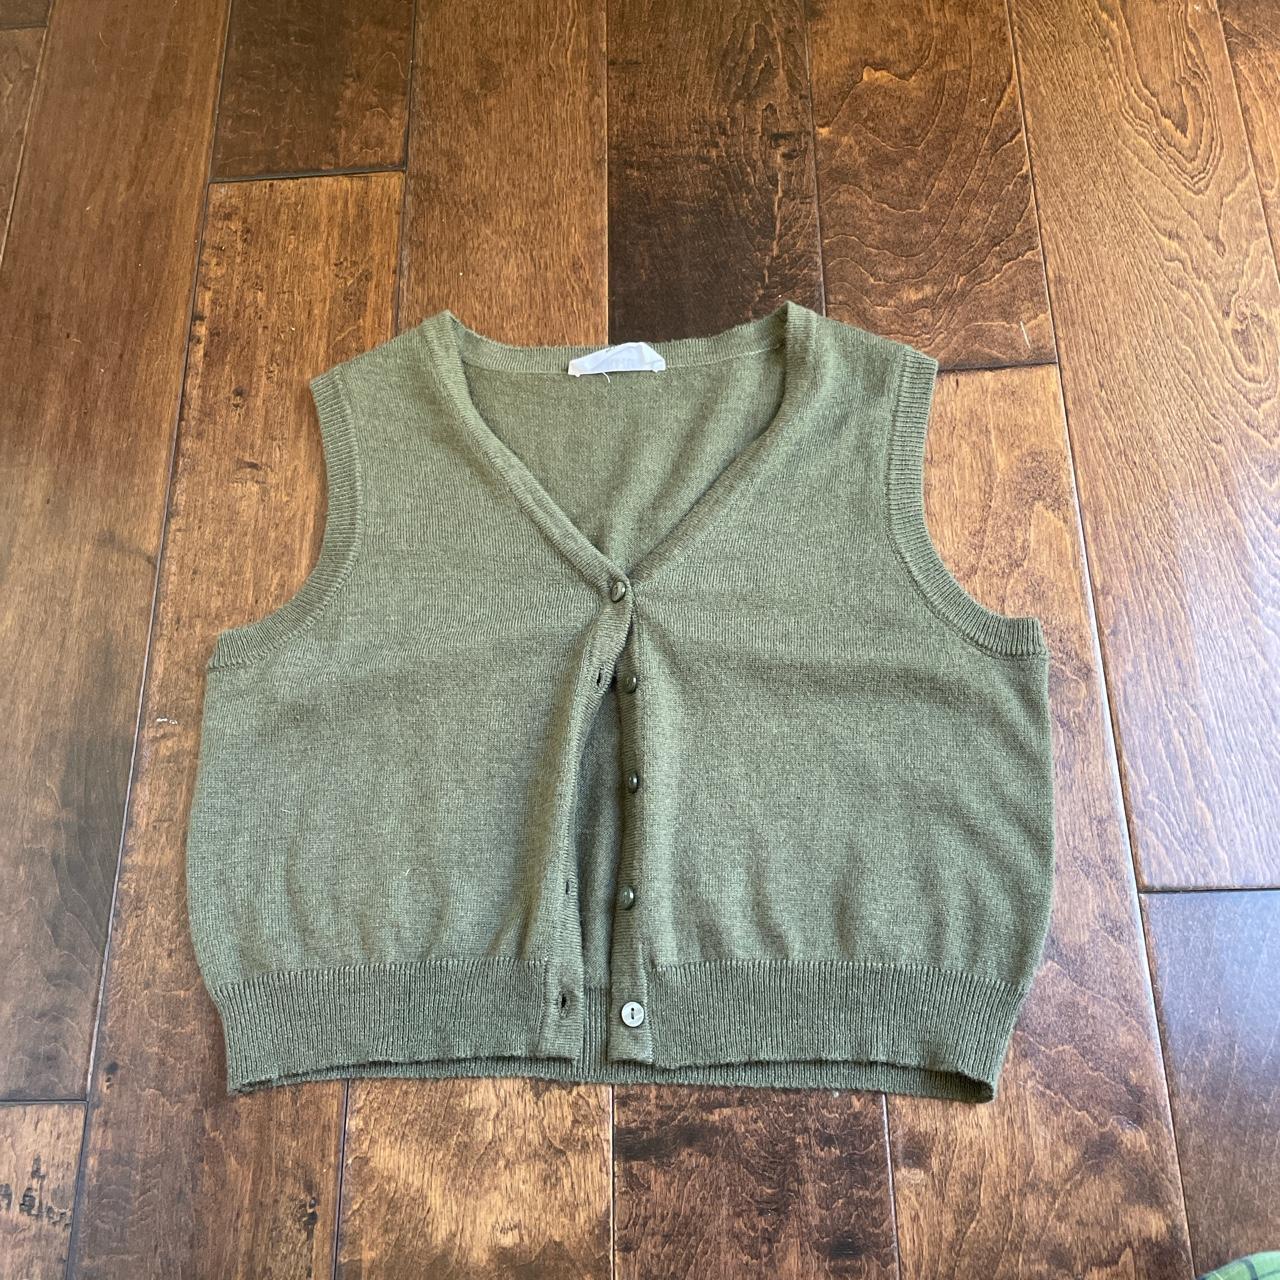 sage green sweater vest - Depop